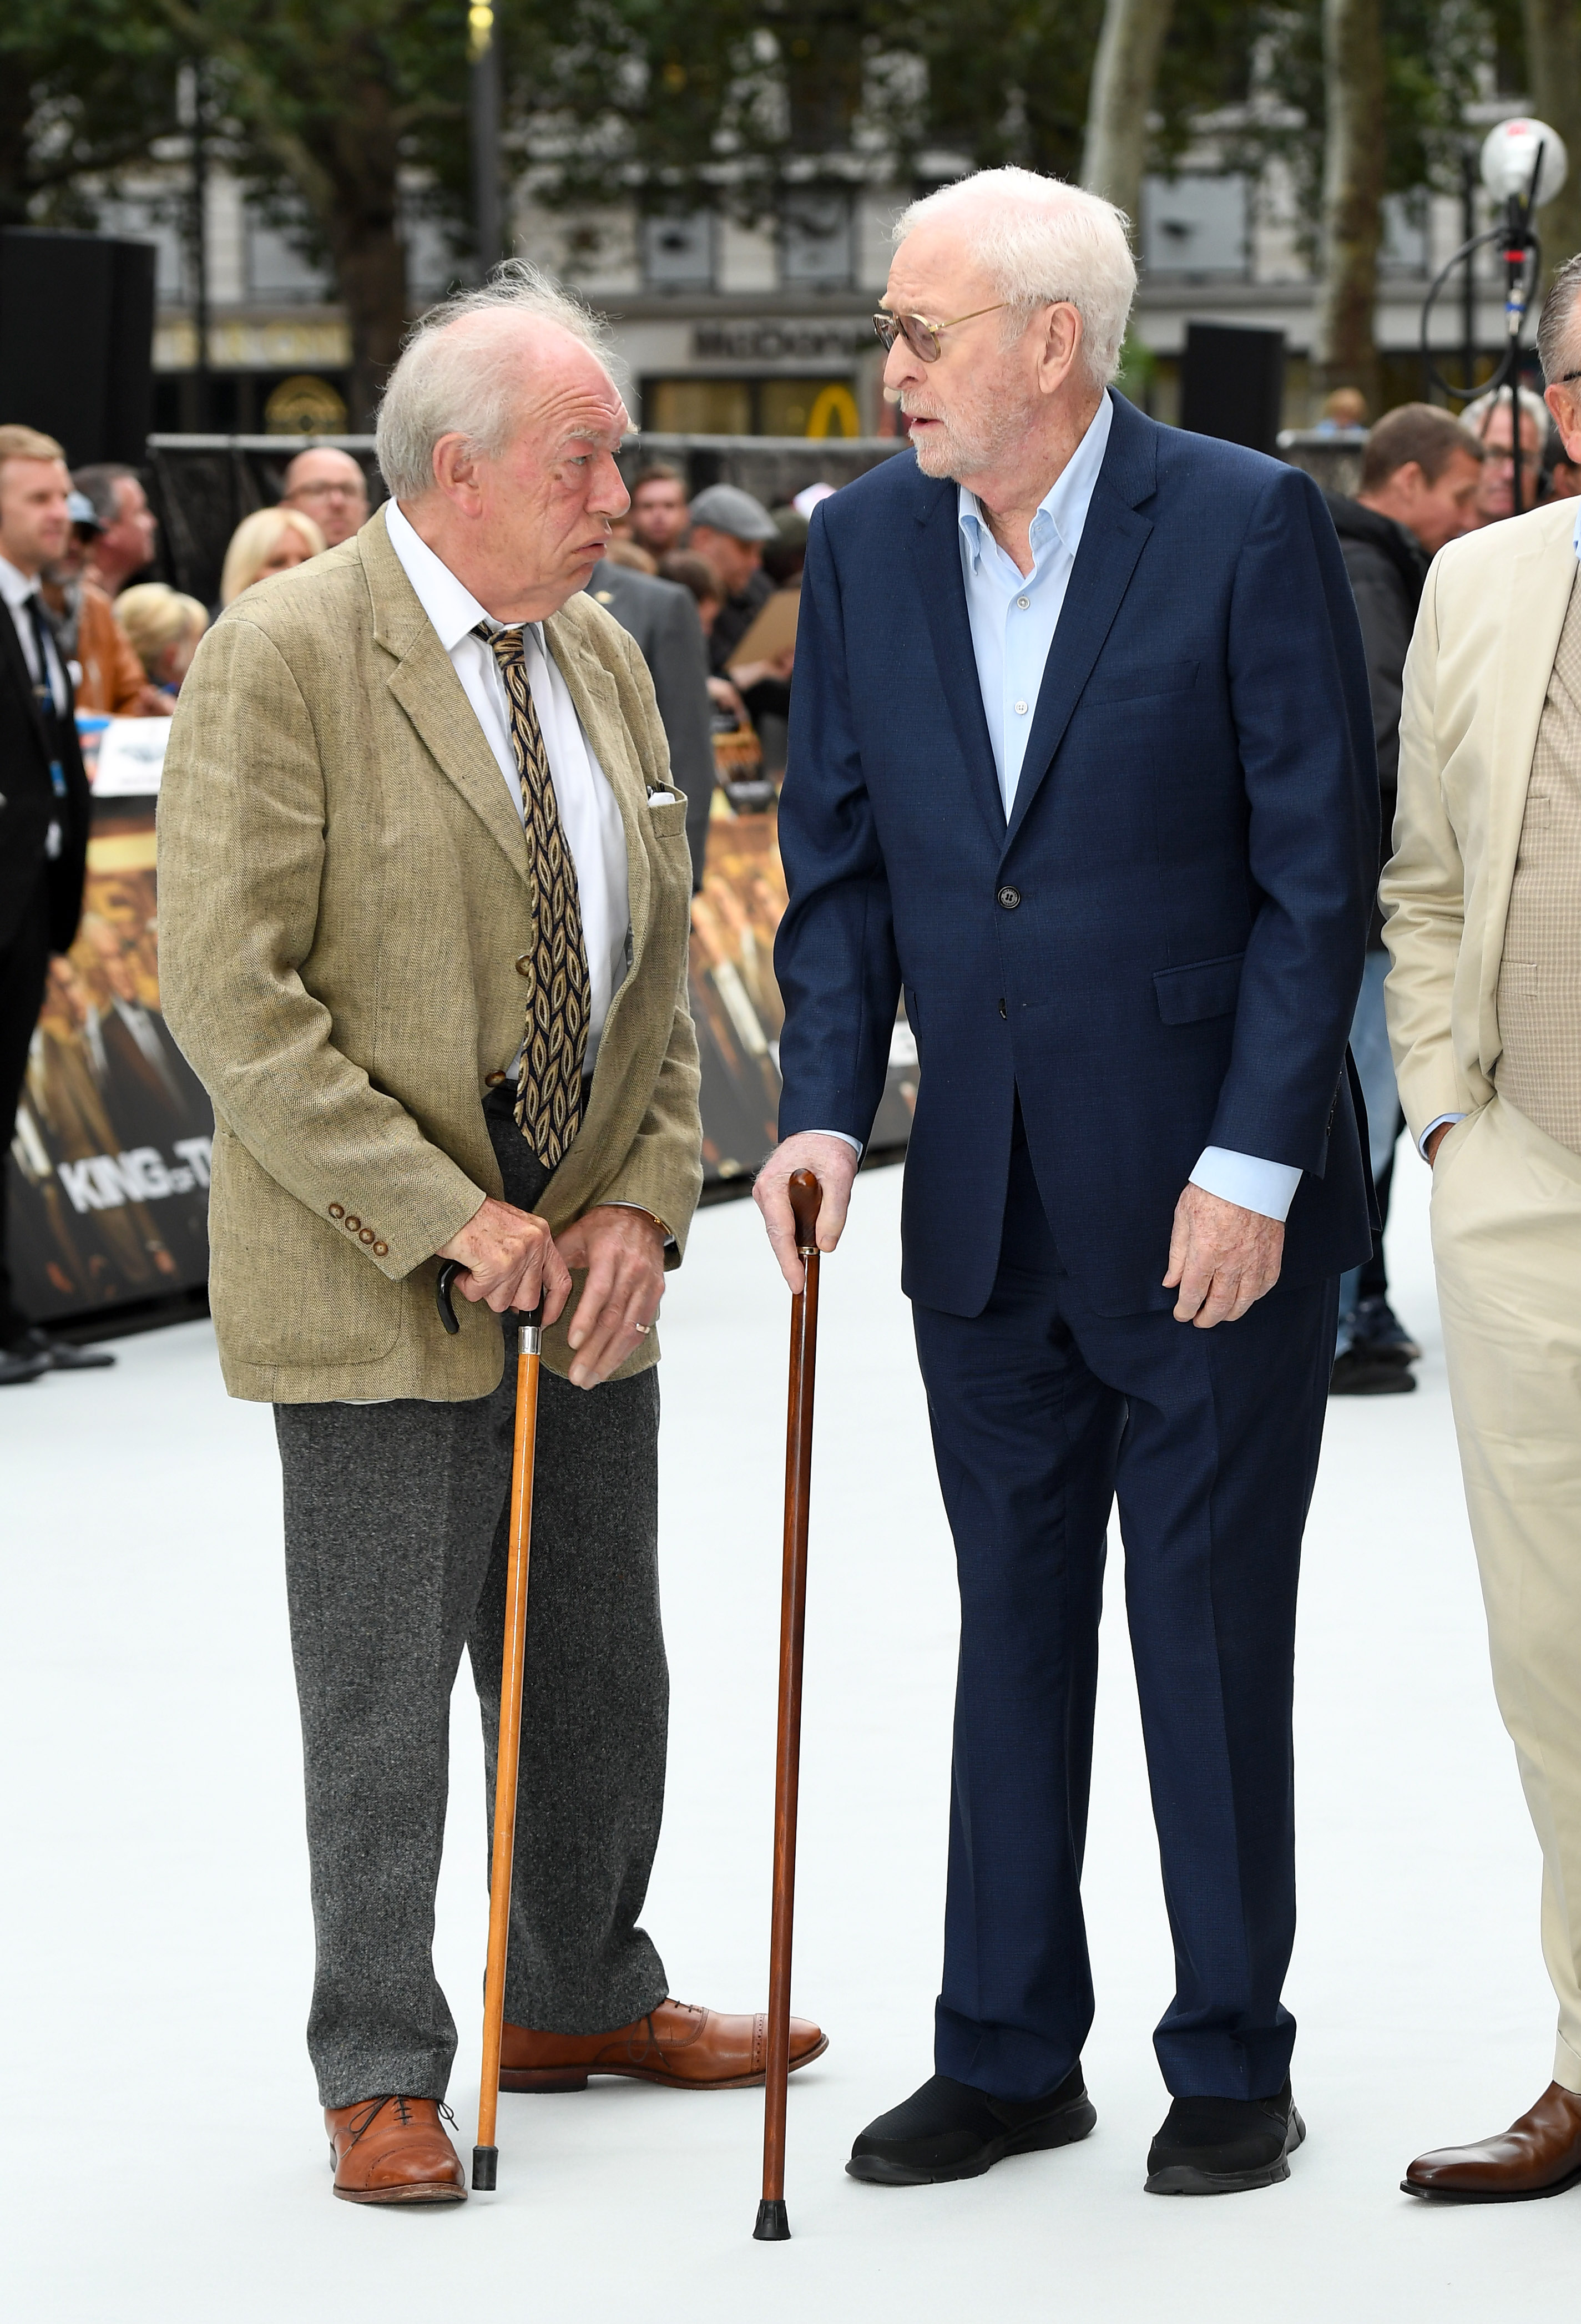 Sir Michael Caine and Sir Michael Gambon lors de la première mondiale de "King Of Thieves" à Londres, en Angleterre, le 12 septembre 2018 | Source : Getty Images